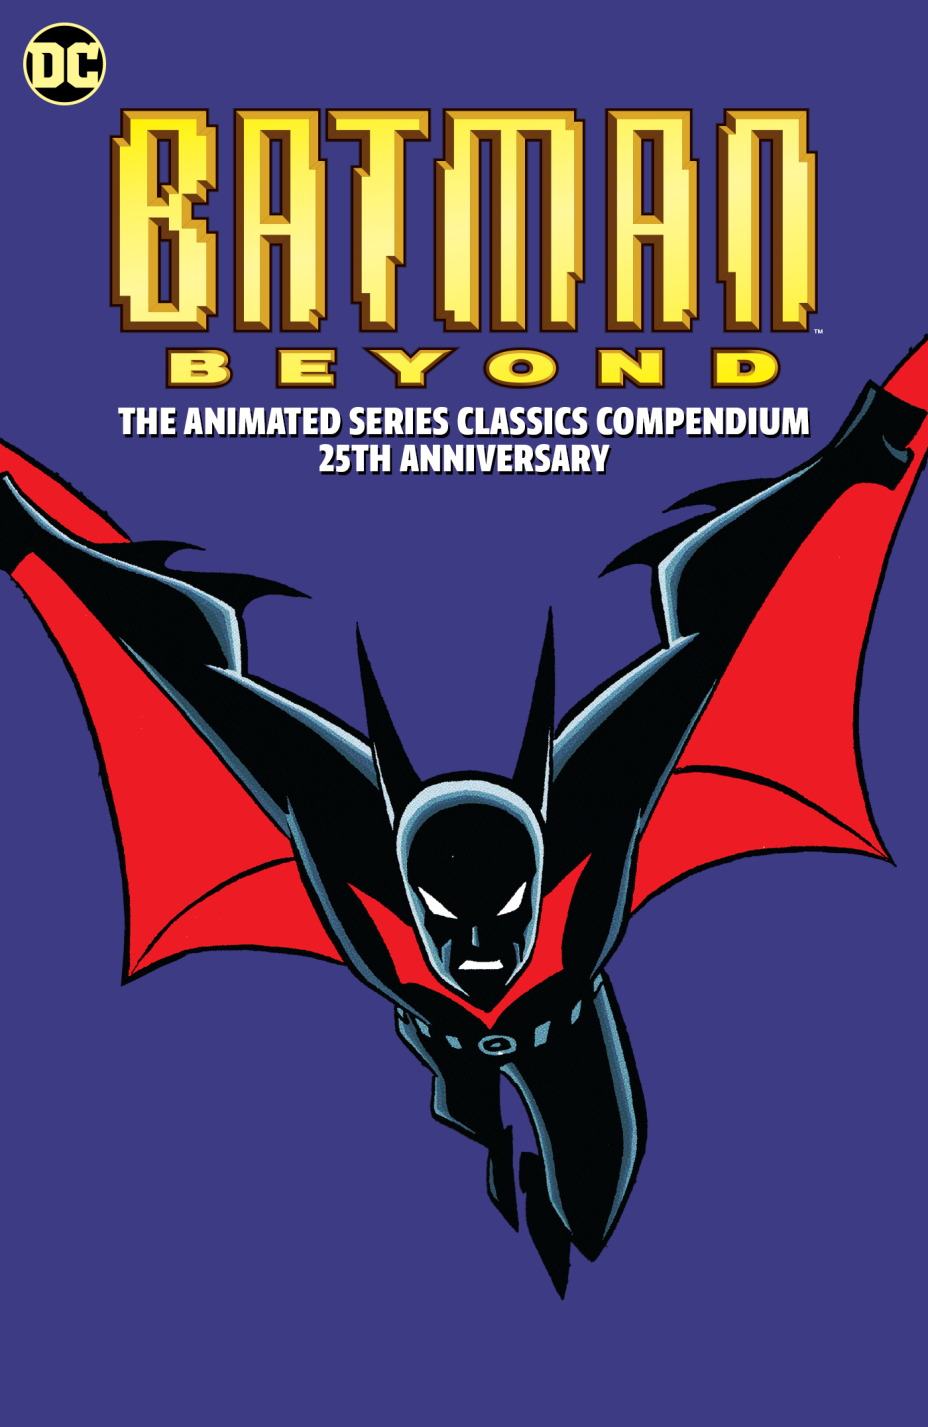 Batman-más-allá-de-la-serie-animada-clásicos-compendio-25-aniversario.png